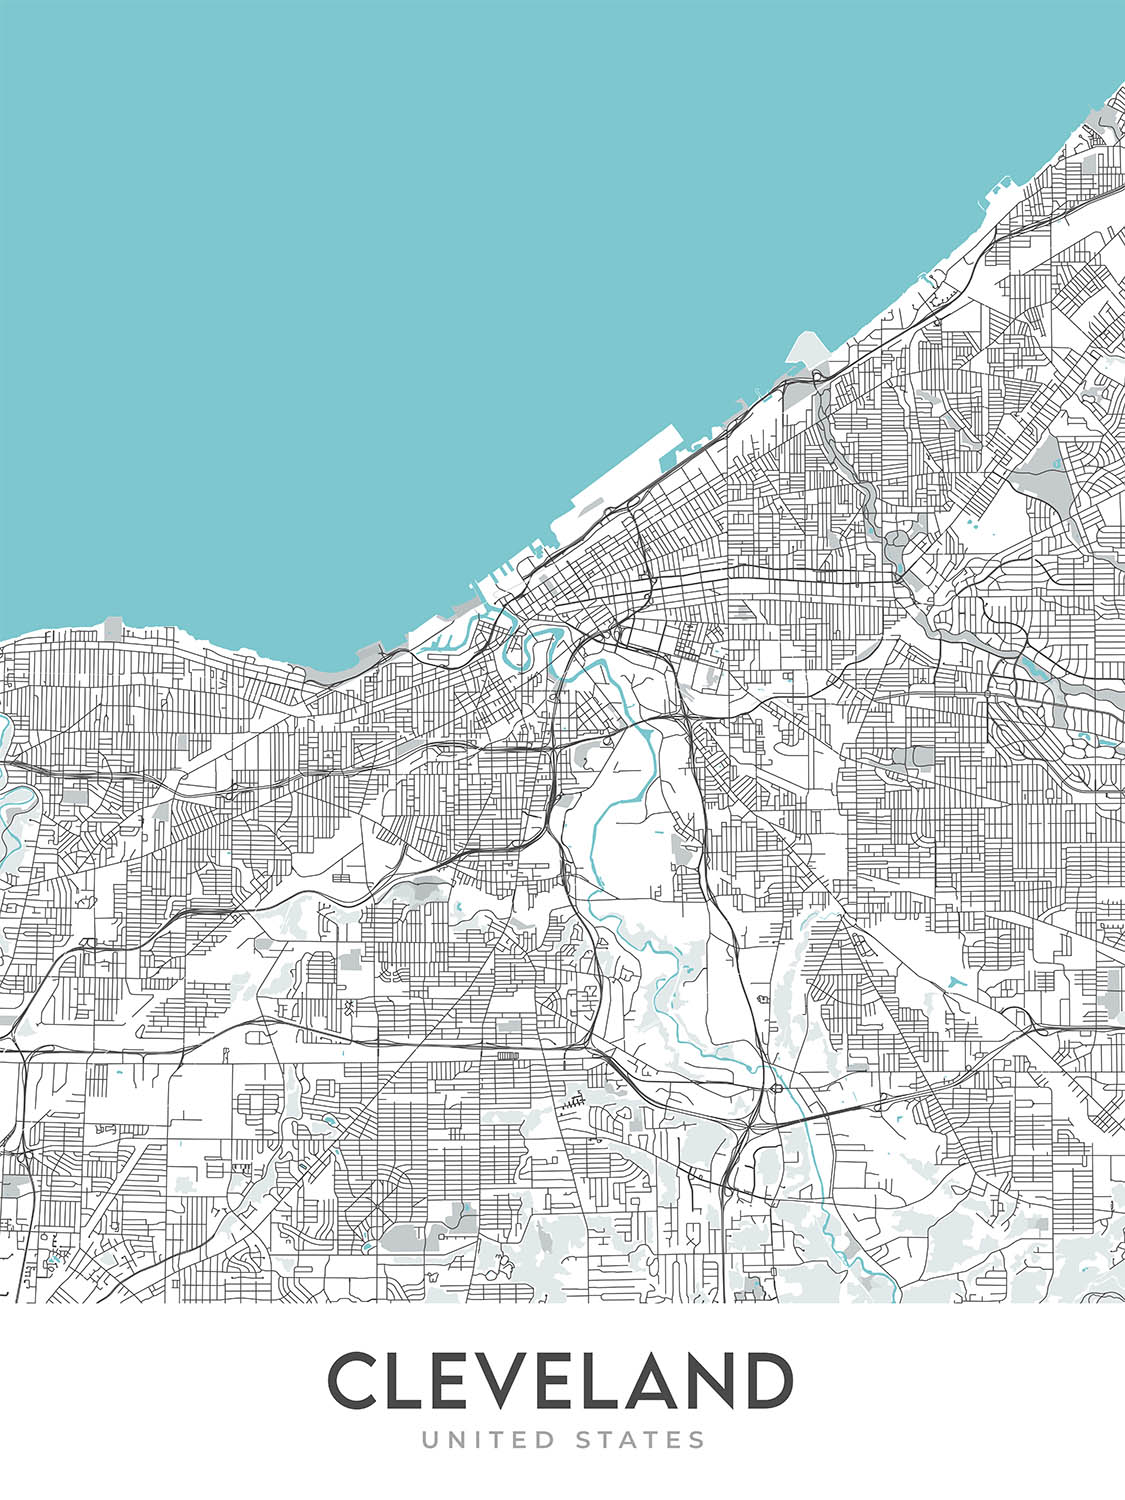 Mapa moderno de la ciudad de Cleveland, OH: ciudad de Ohio, Tremont, University Circle, Salón de la Fama del Rock and Roll, I-90